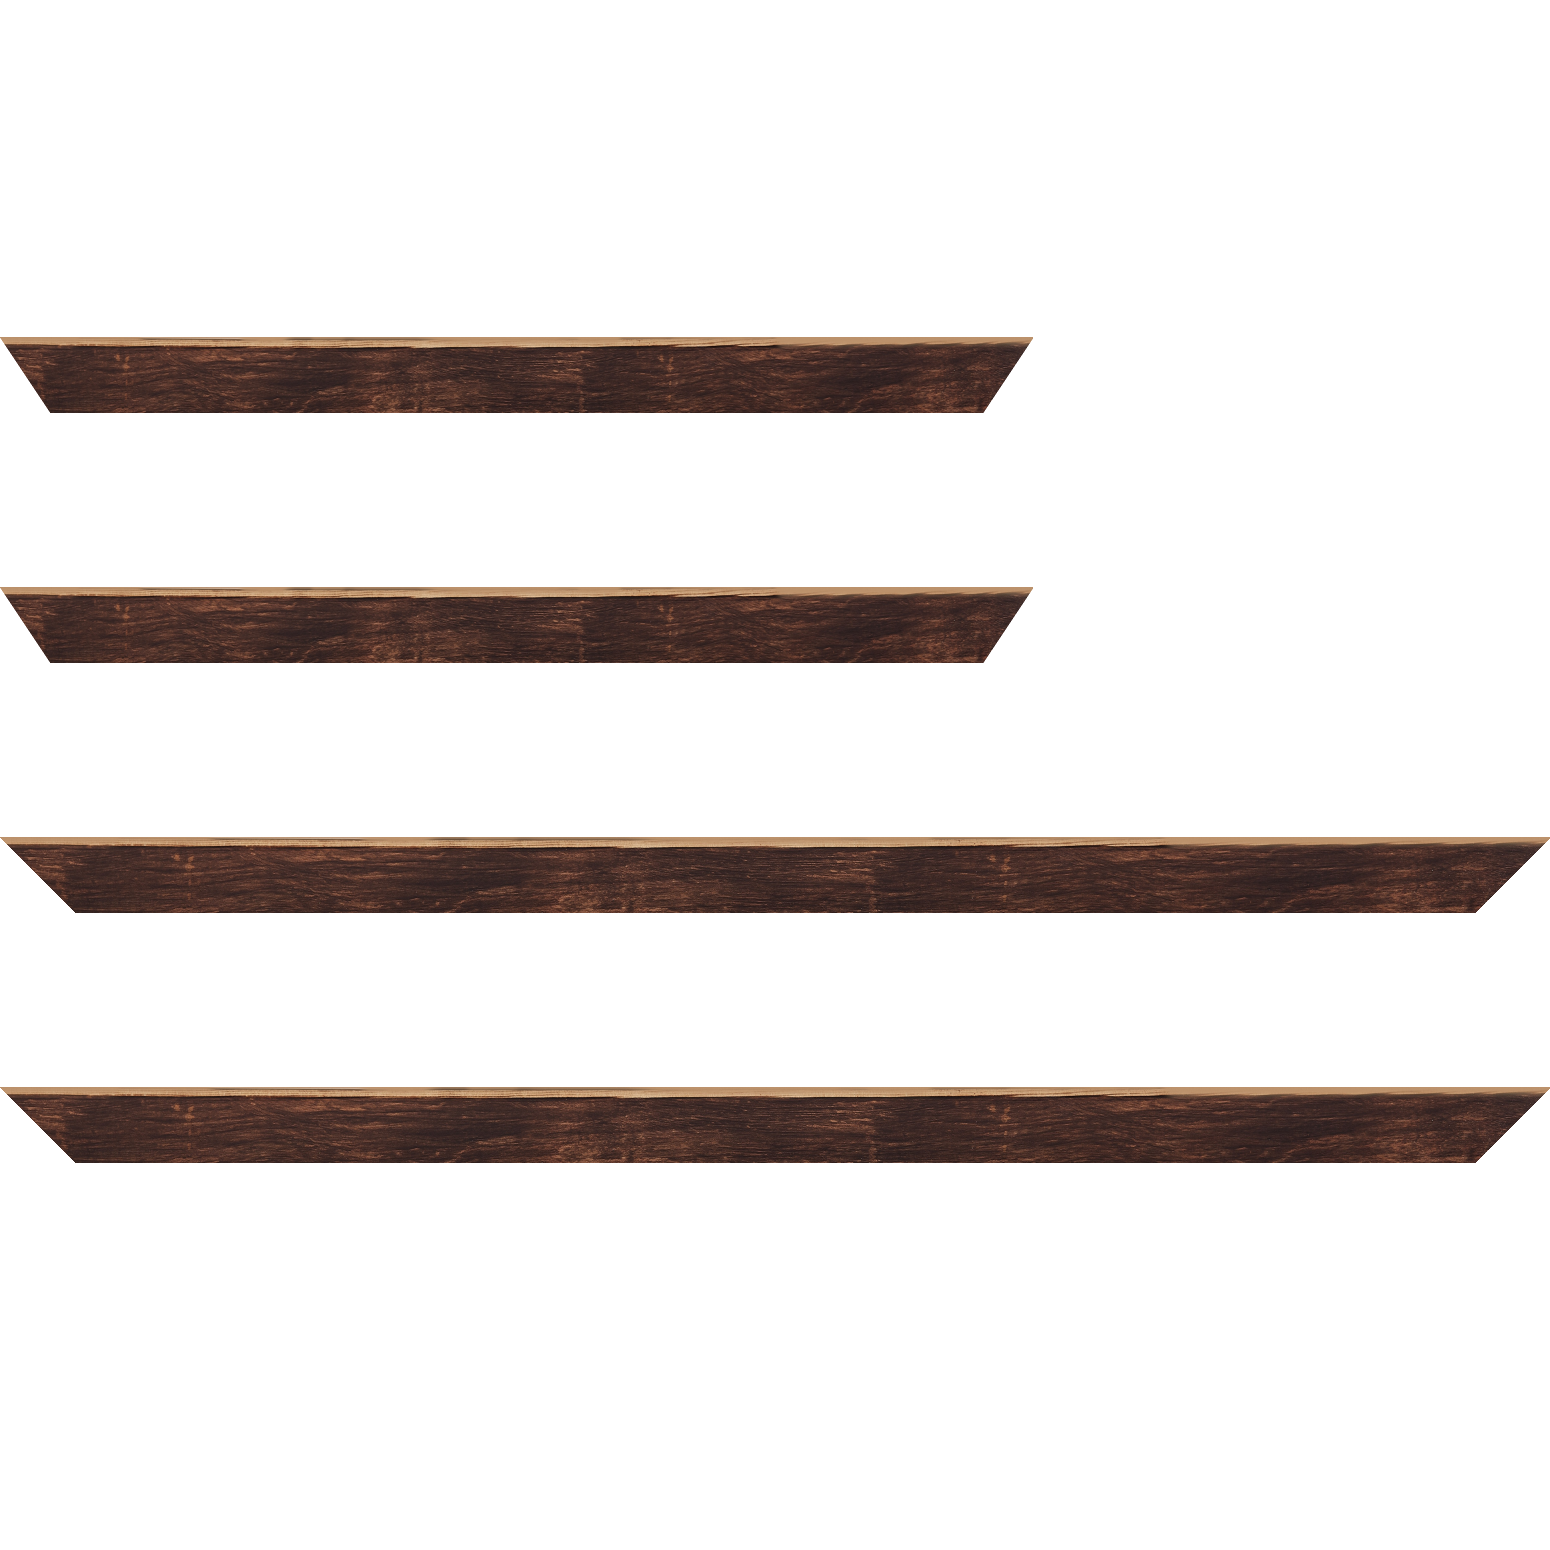 Baguette bois profil arrondi en pente plongeant largeur 2.4cm couleur marron effet ressuyé, angle du cadre extérieur filet naturel - 50x60